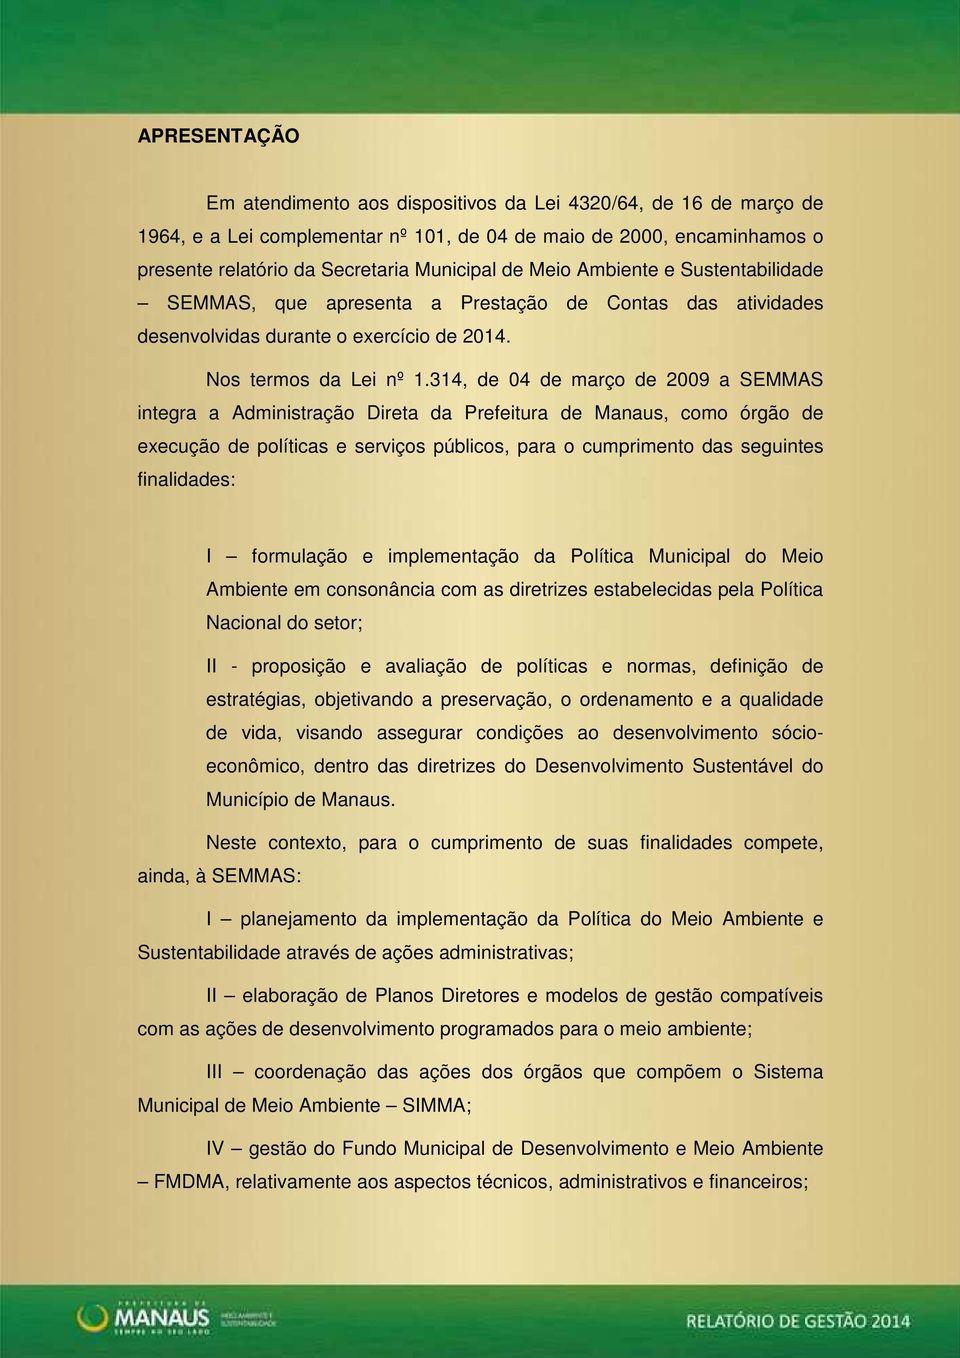 314, de 04 de março de 2009 a SEMMAS integra a Administração Direta da Prefeitura de Manaus, como órgão de execução de políticas e serviços públicos, para o cumprimento das seguintes finalidades: I